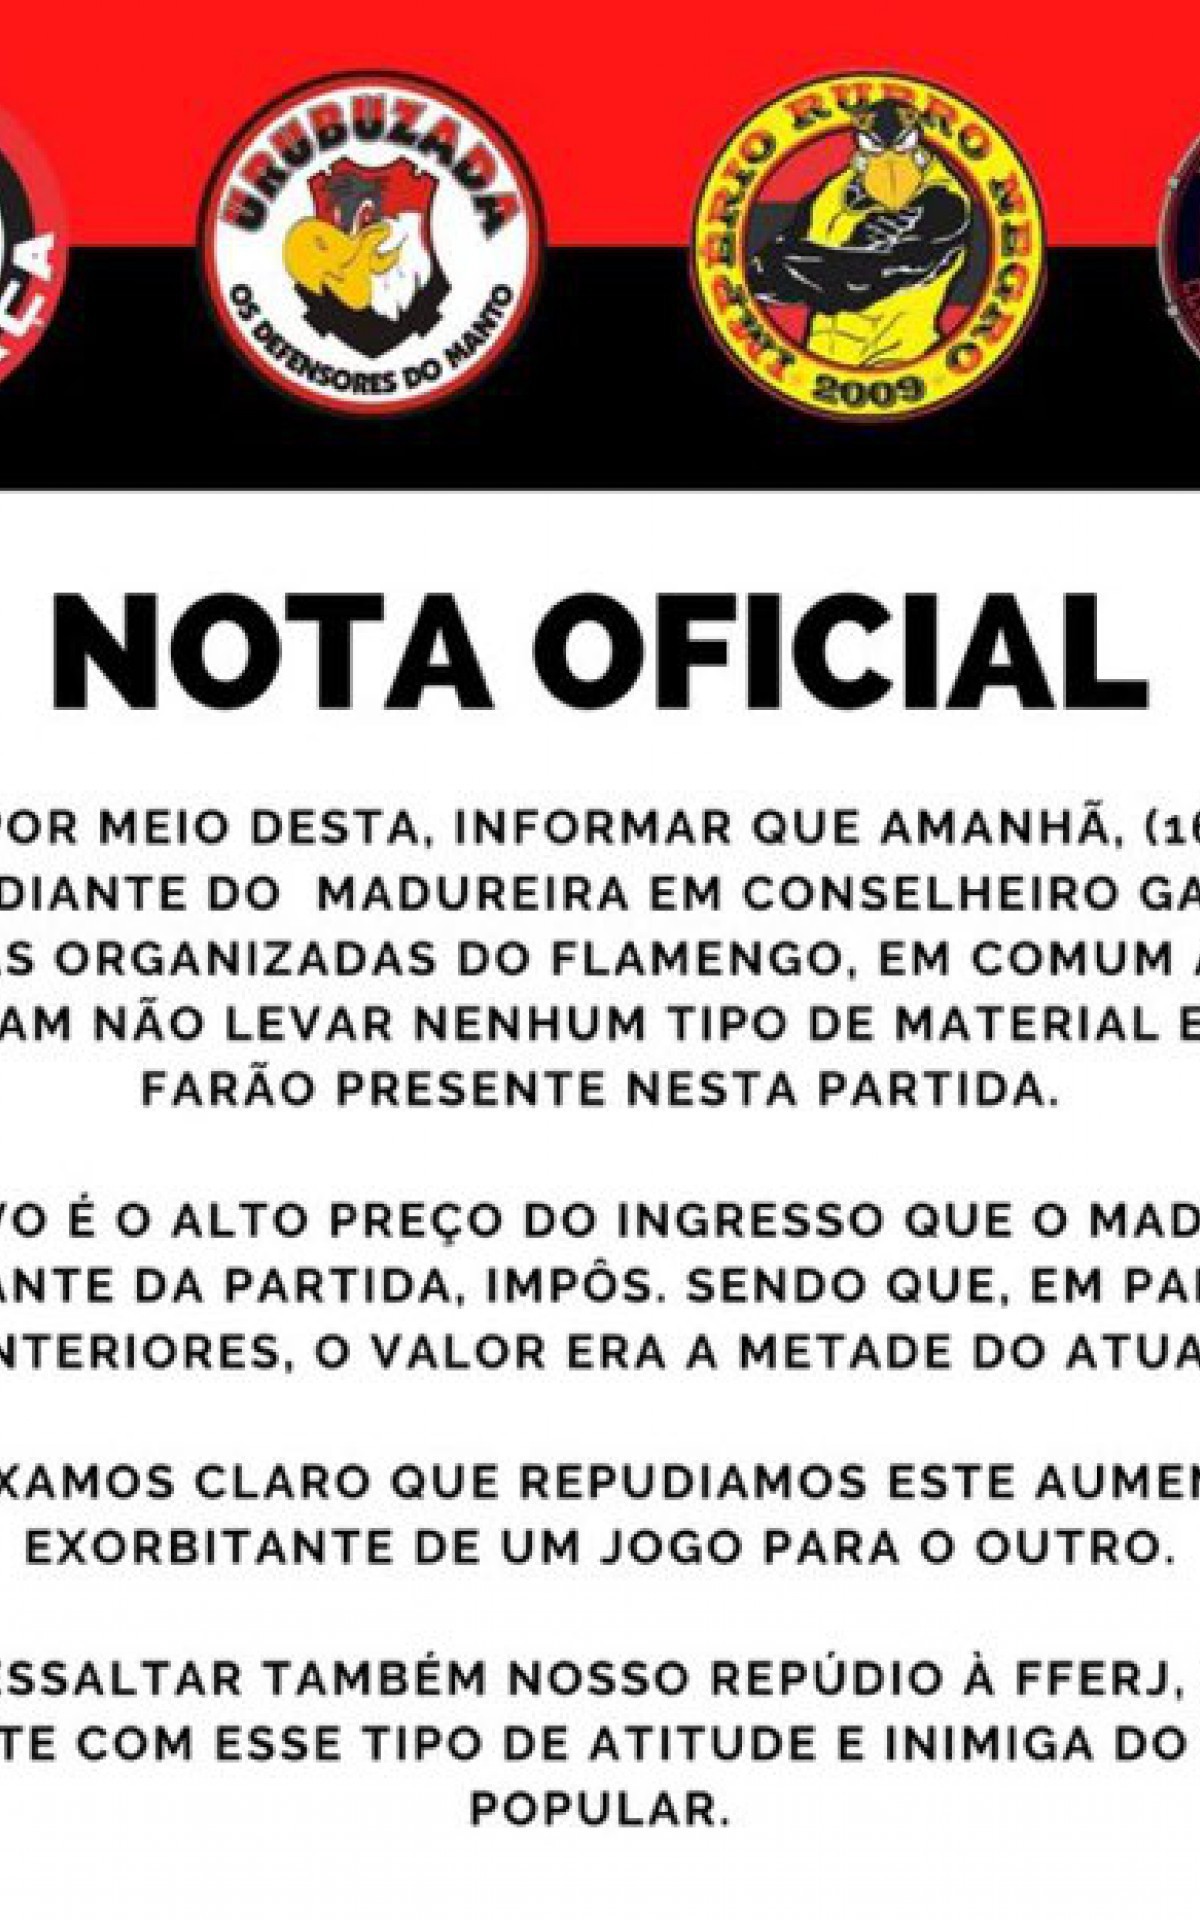 Nota das torcidas organizadas do Flamengo sobre os valores dos ingressos para o confronto contra o Madureira